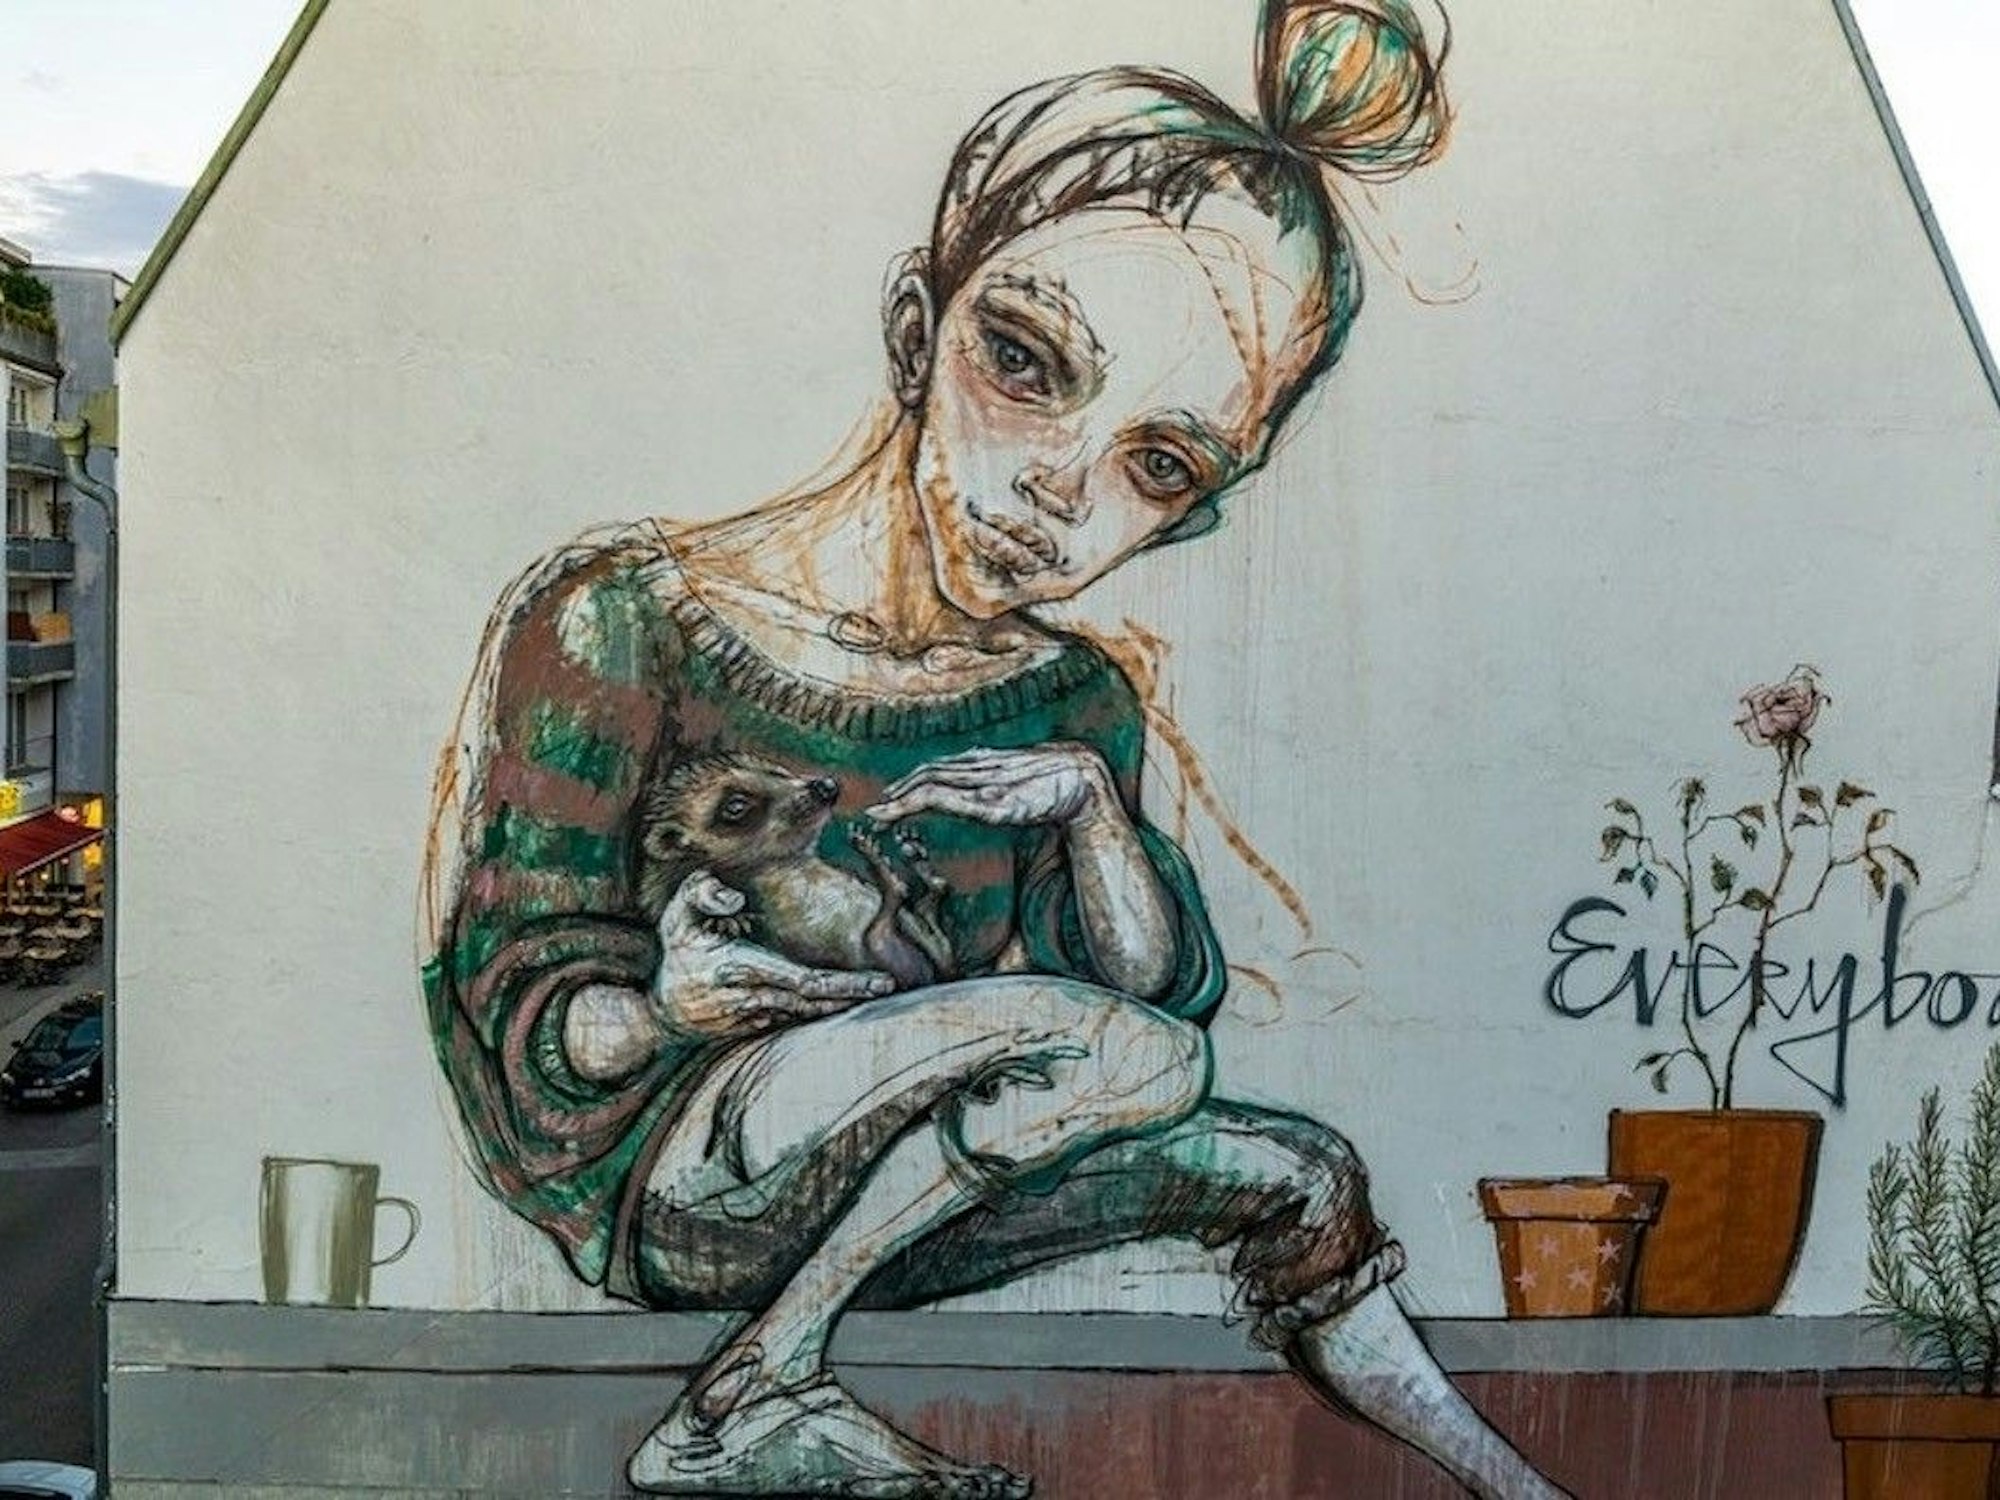 Kunstwerk einer der Künstlerinnen von San Hejmo. Zu sehen ist eine Frau und der Schriftzug "Everybody"